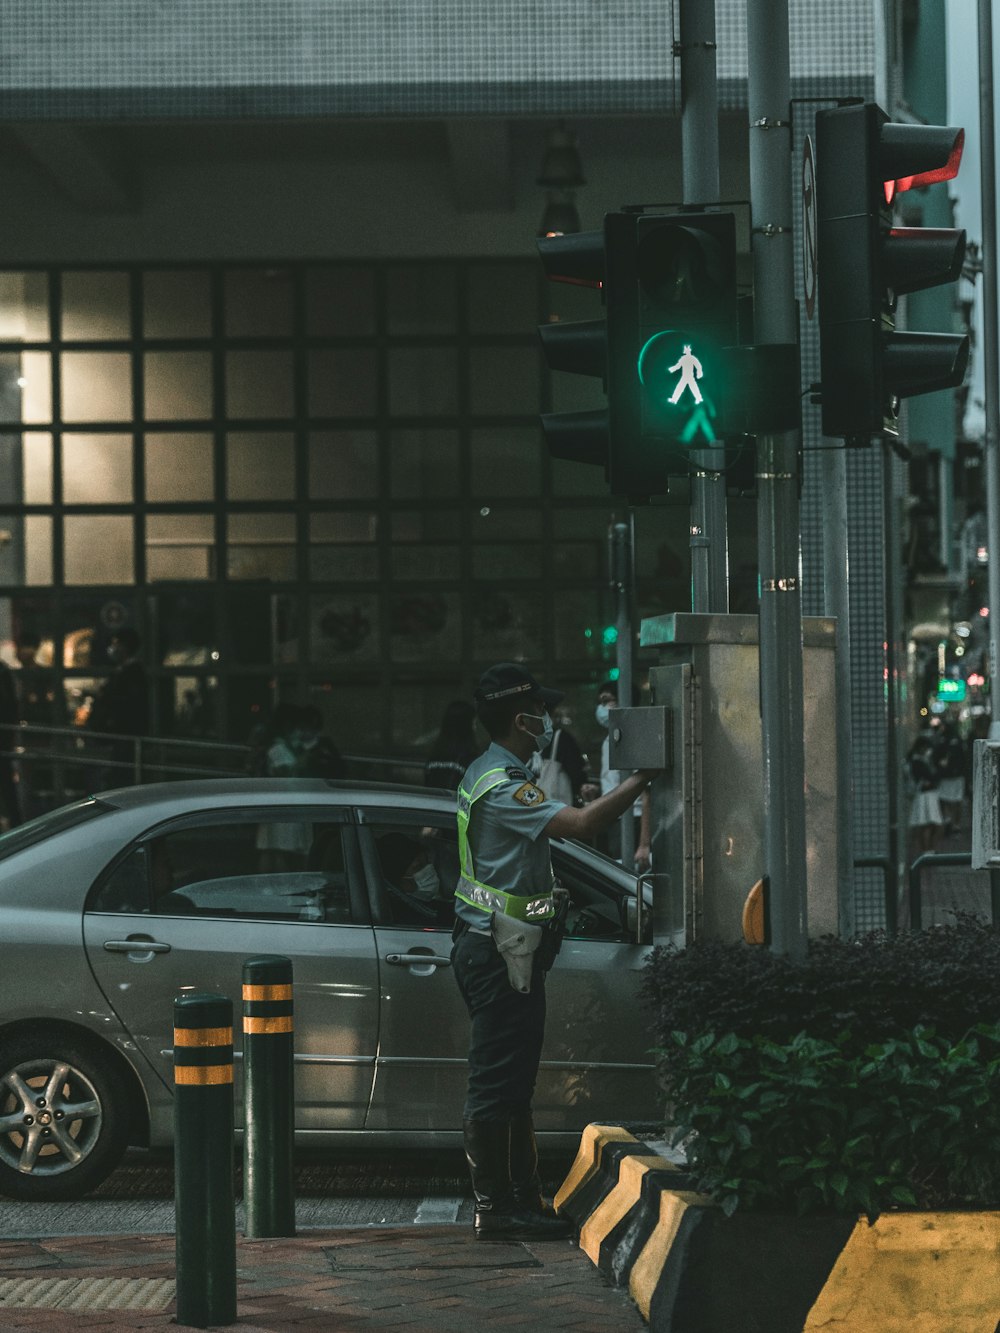 a man standing next to a green traffic light